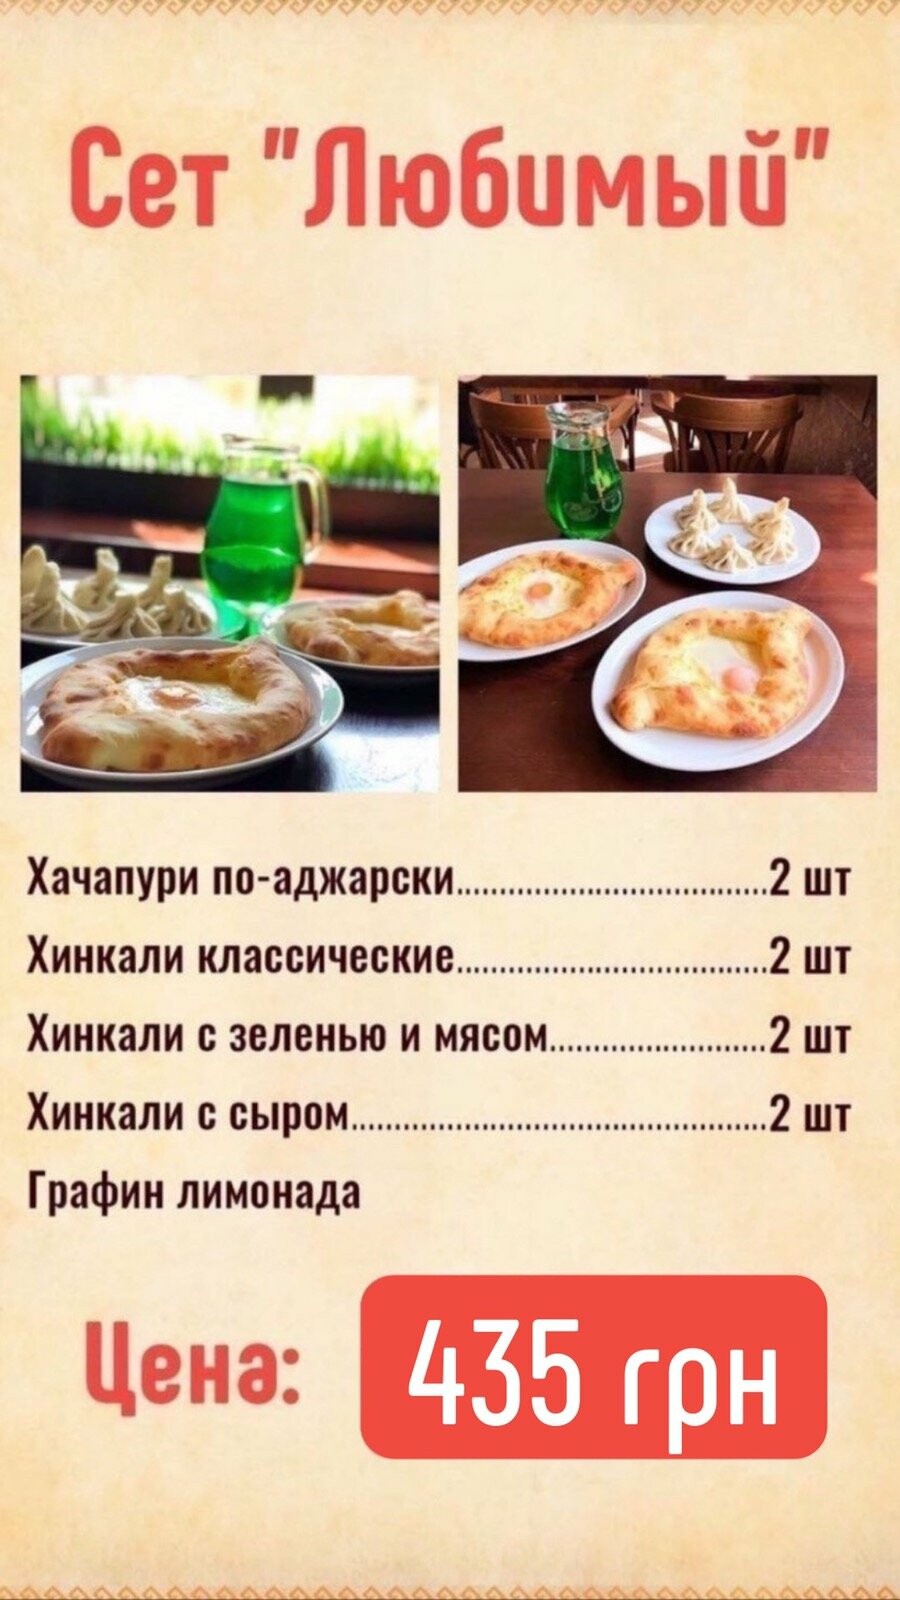 Найсмачніше меню Хінкальня у Запоріжжі ресторан грузинської кухні, фото-5